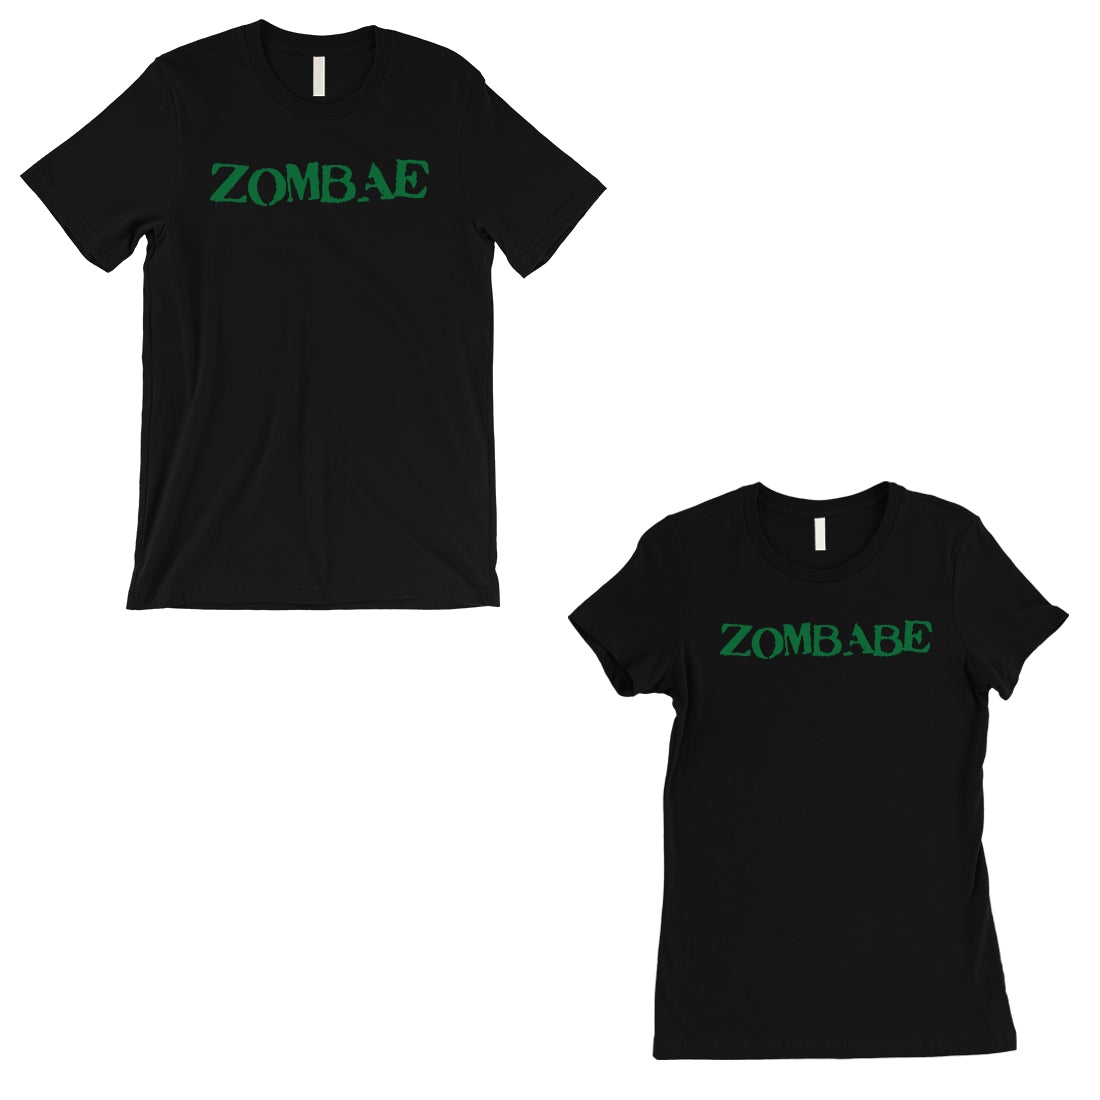 Zombae And Zombabe Matching Couple Gift Shirts Black